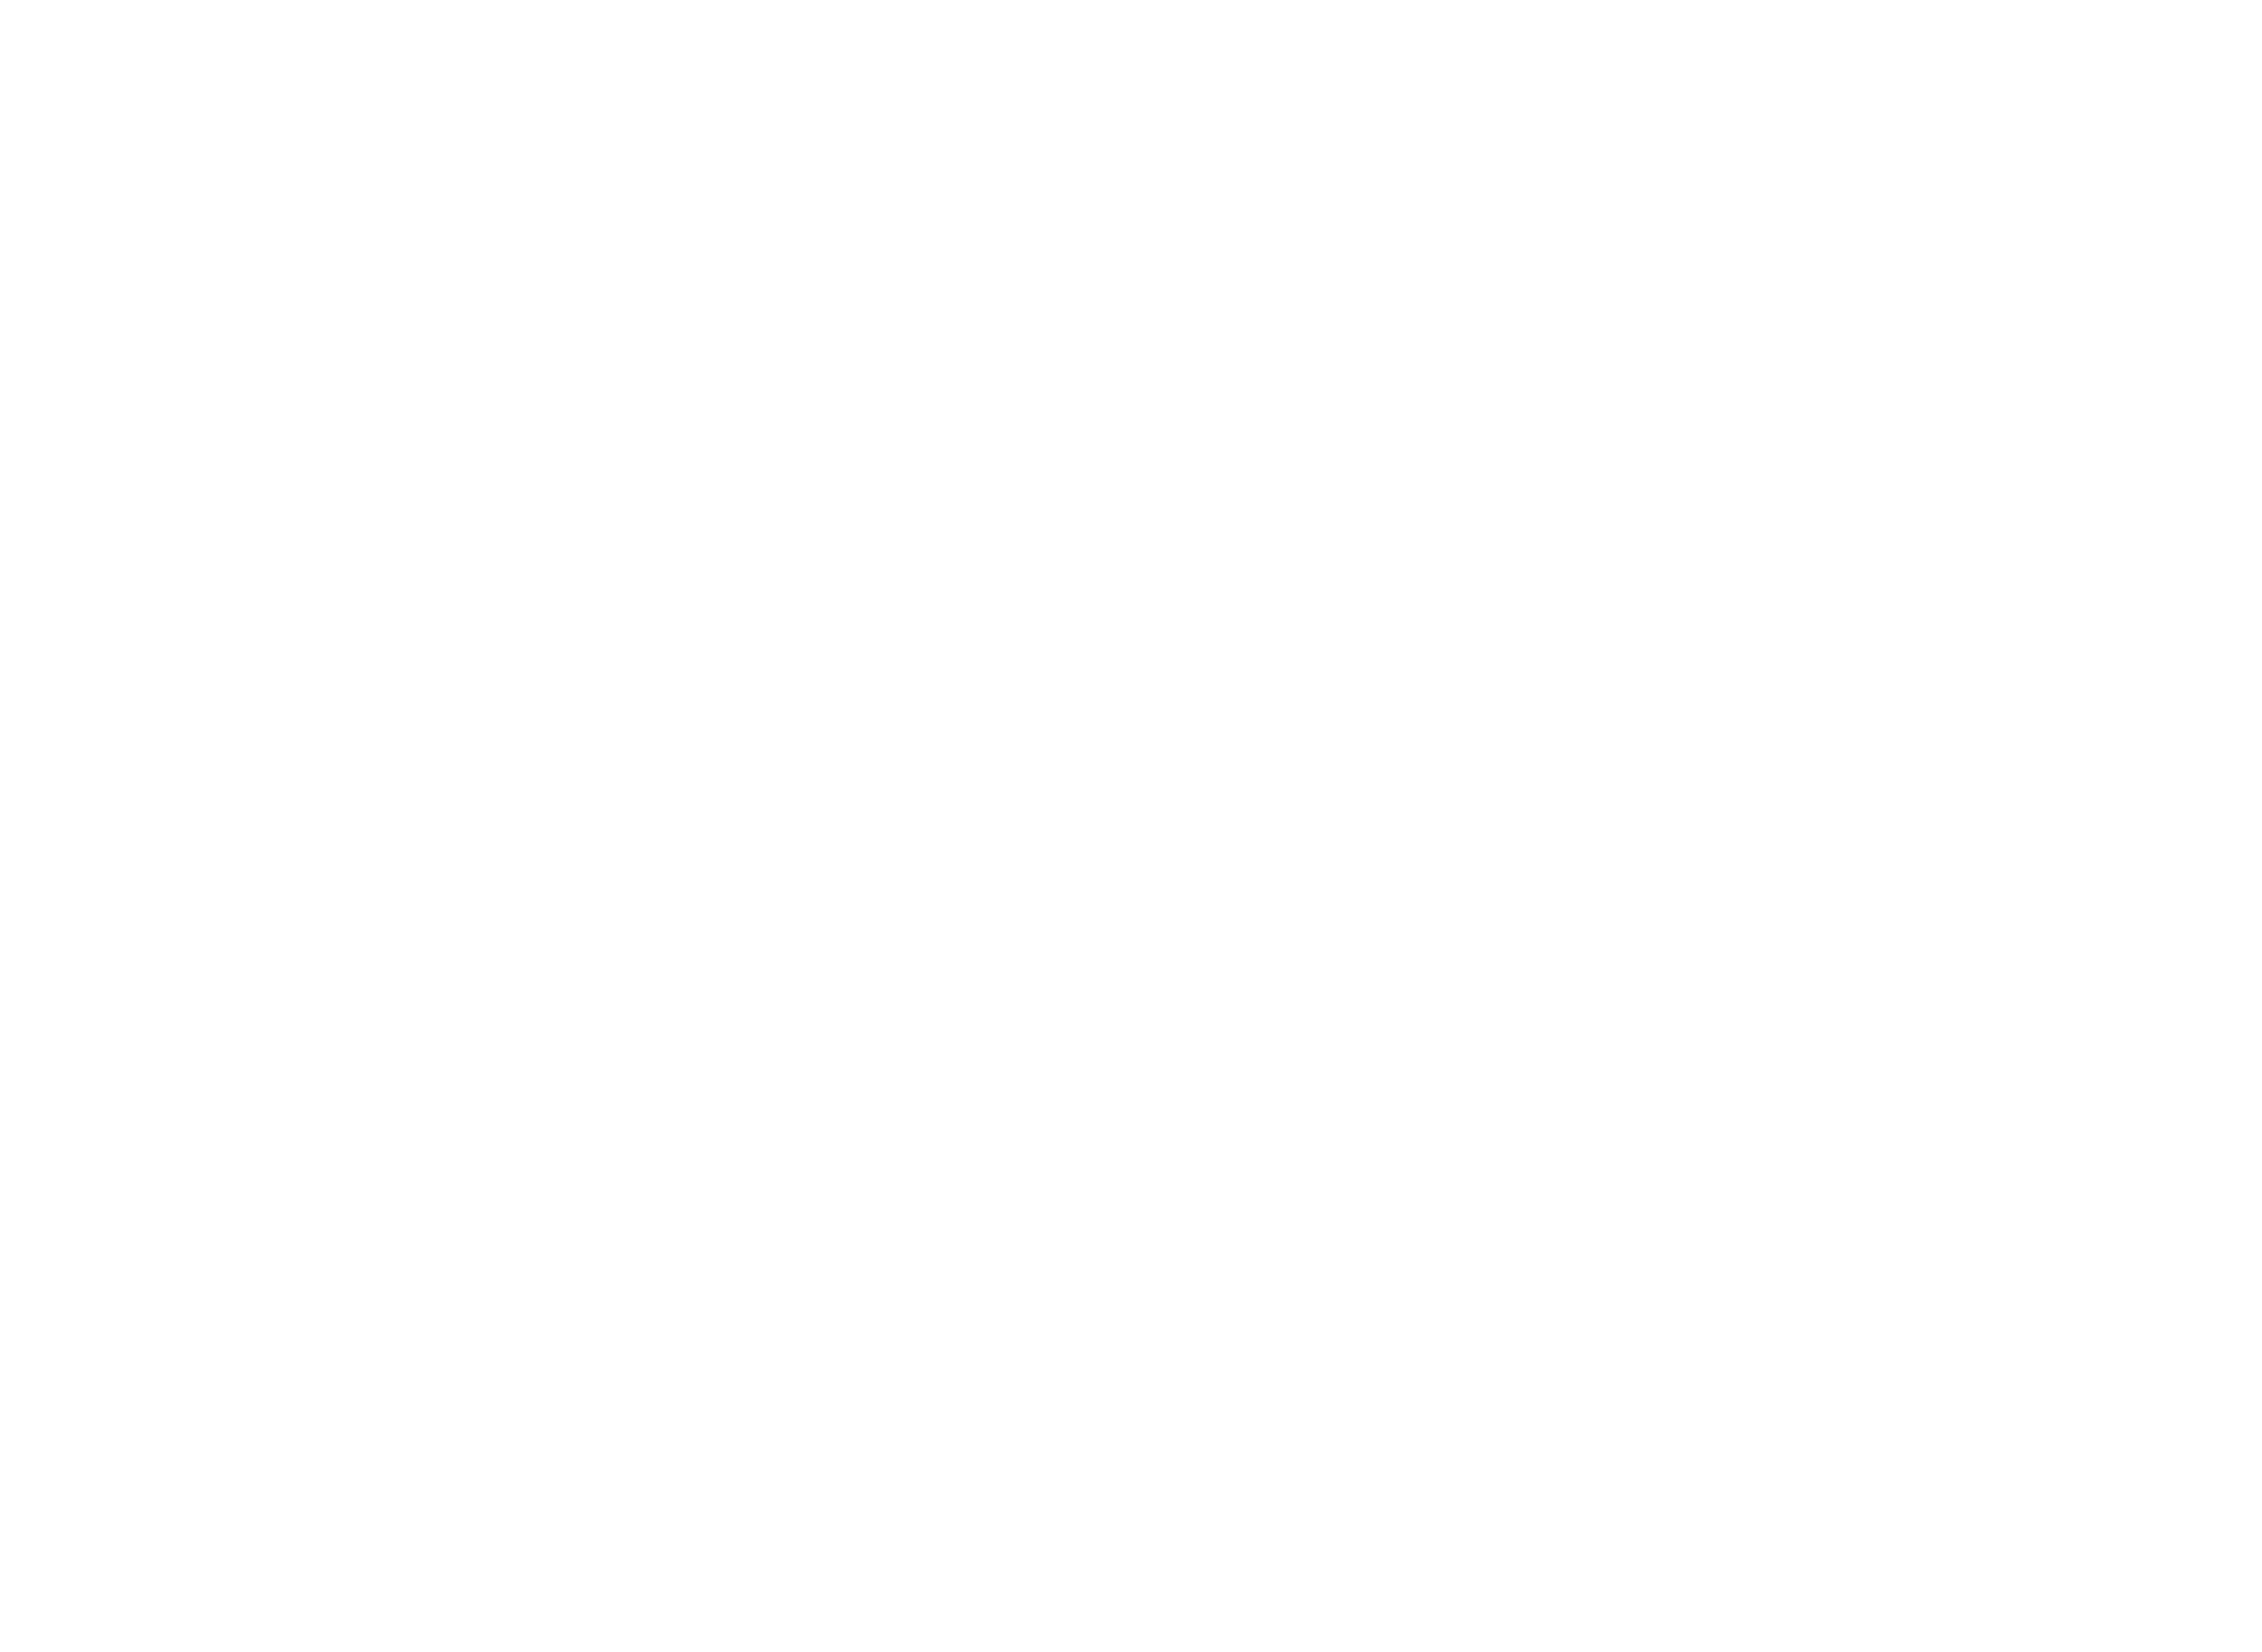 Bootsecke